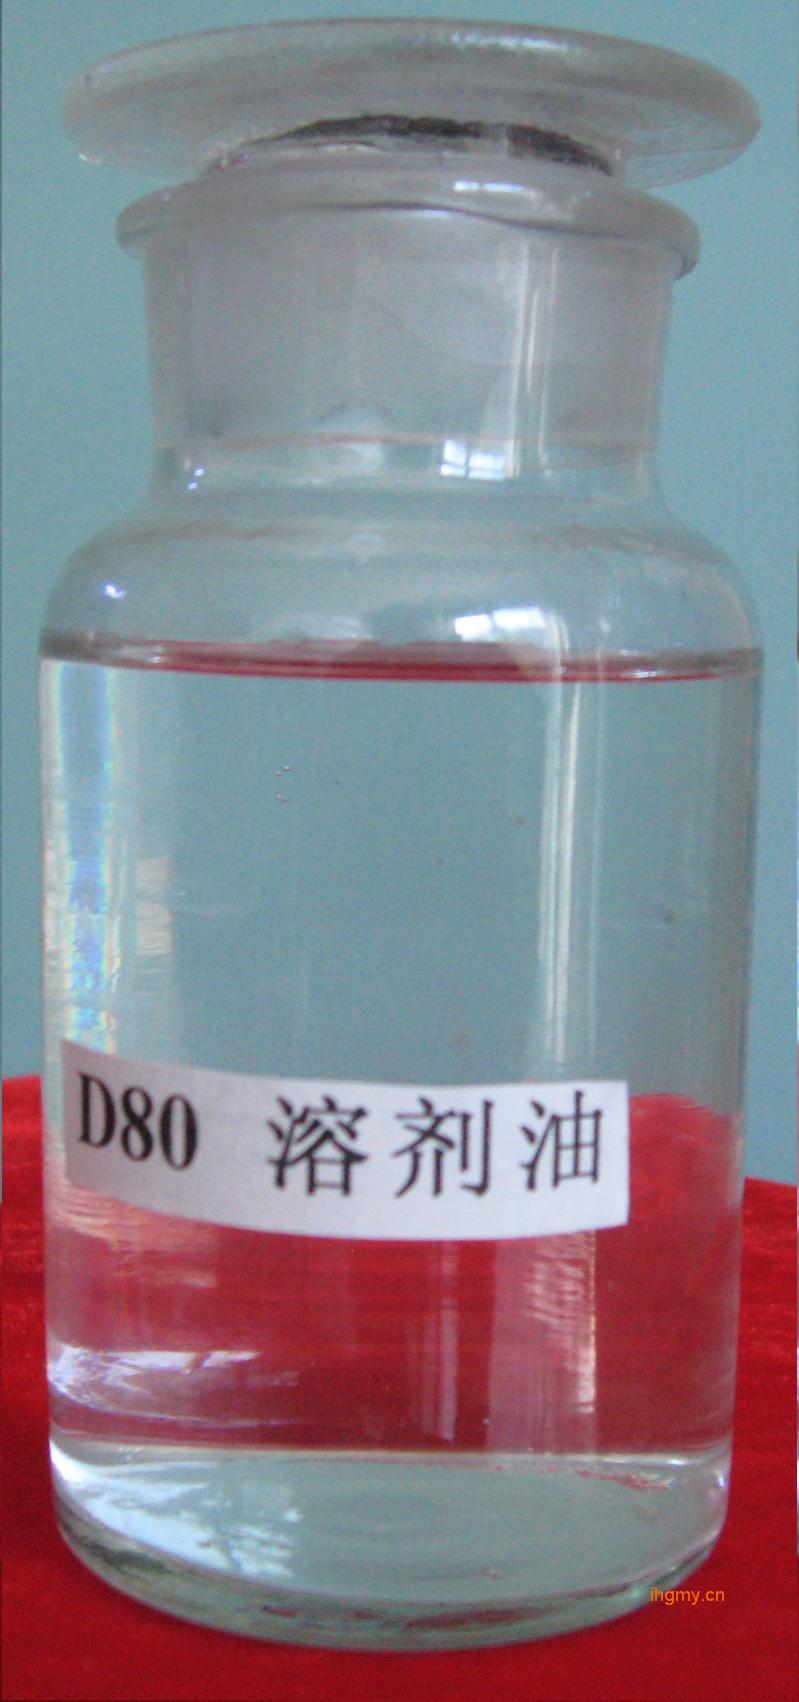 D80 环保清洗剂 稀释剂 降粘剂